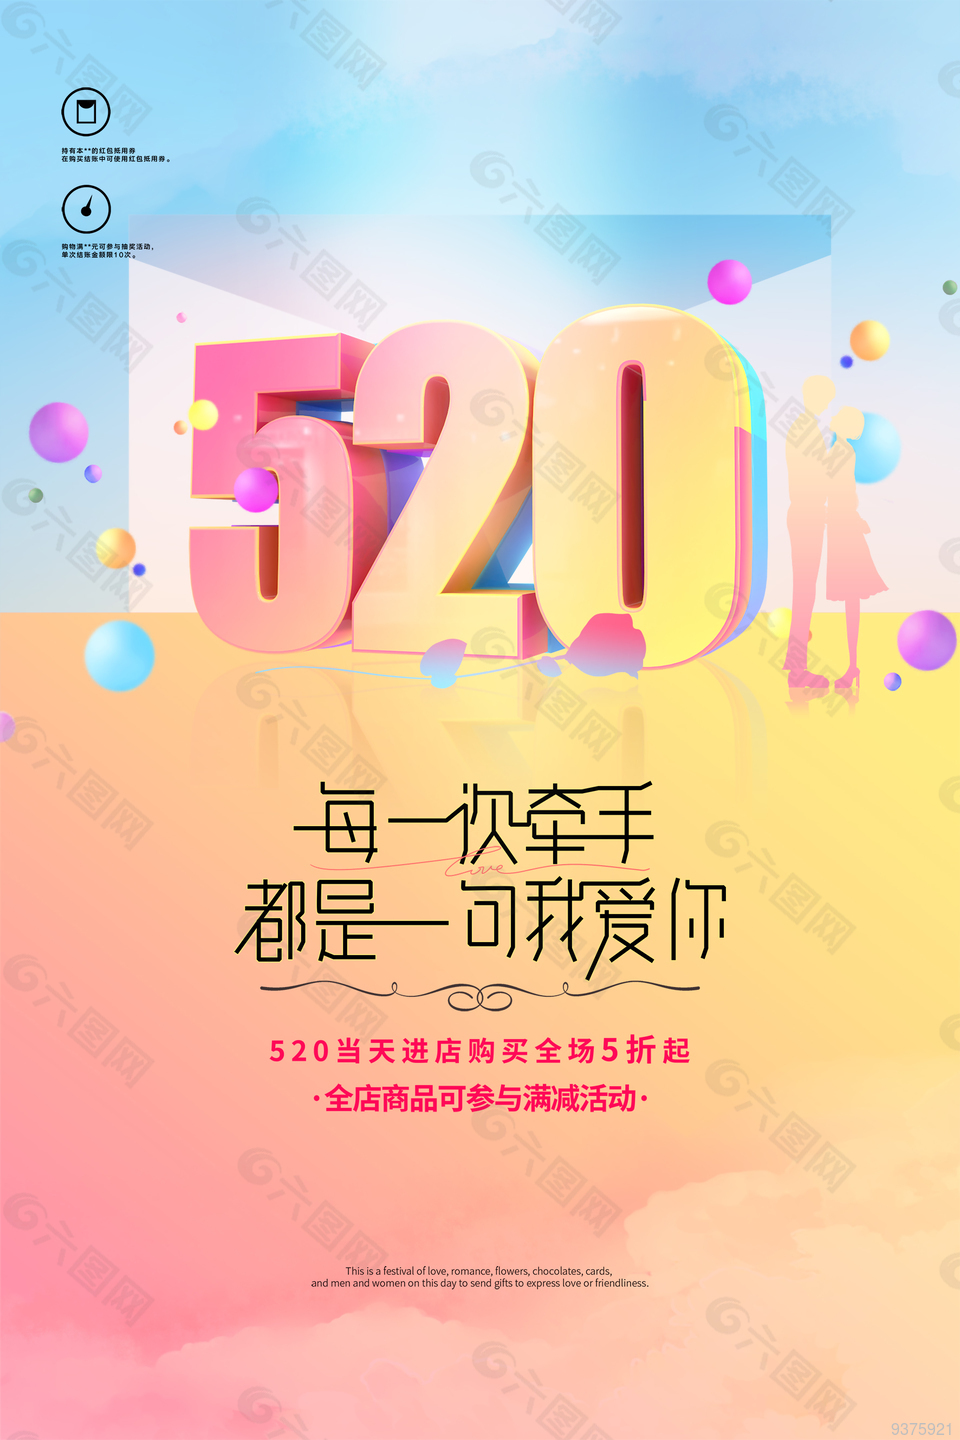 520情人节节日促销海报设计